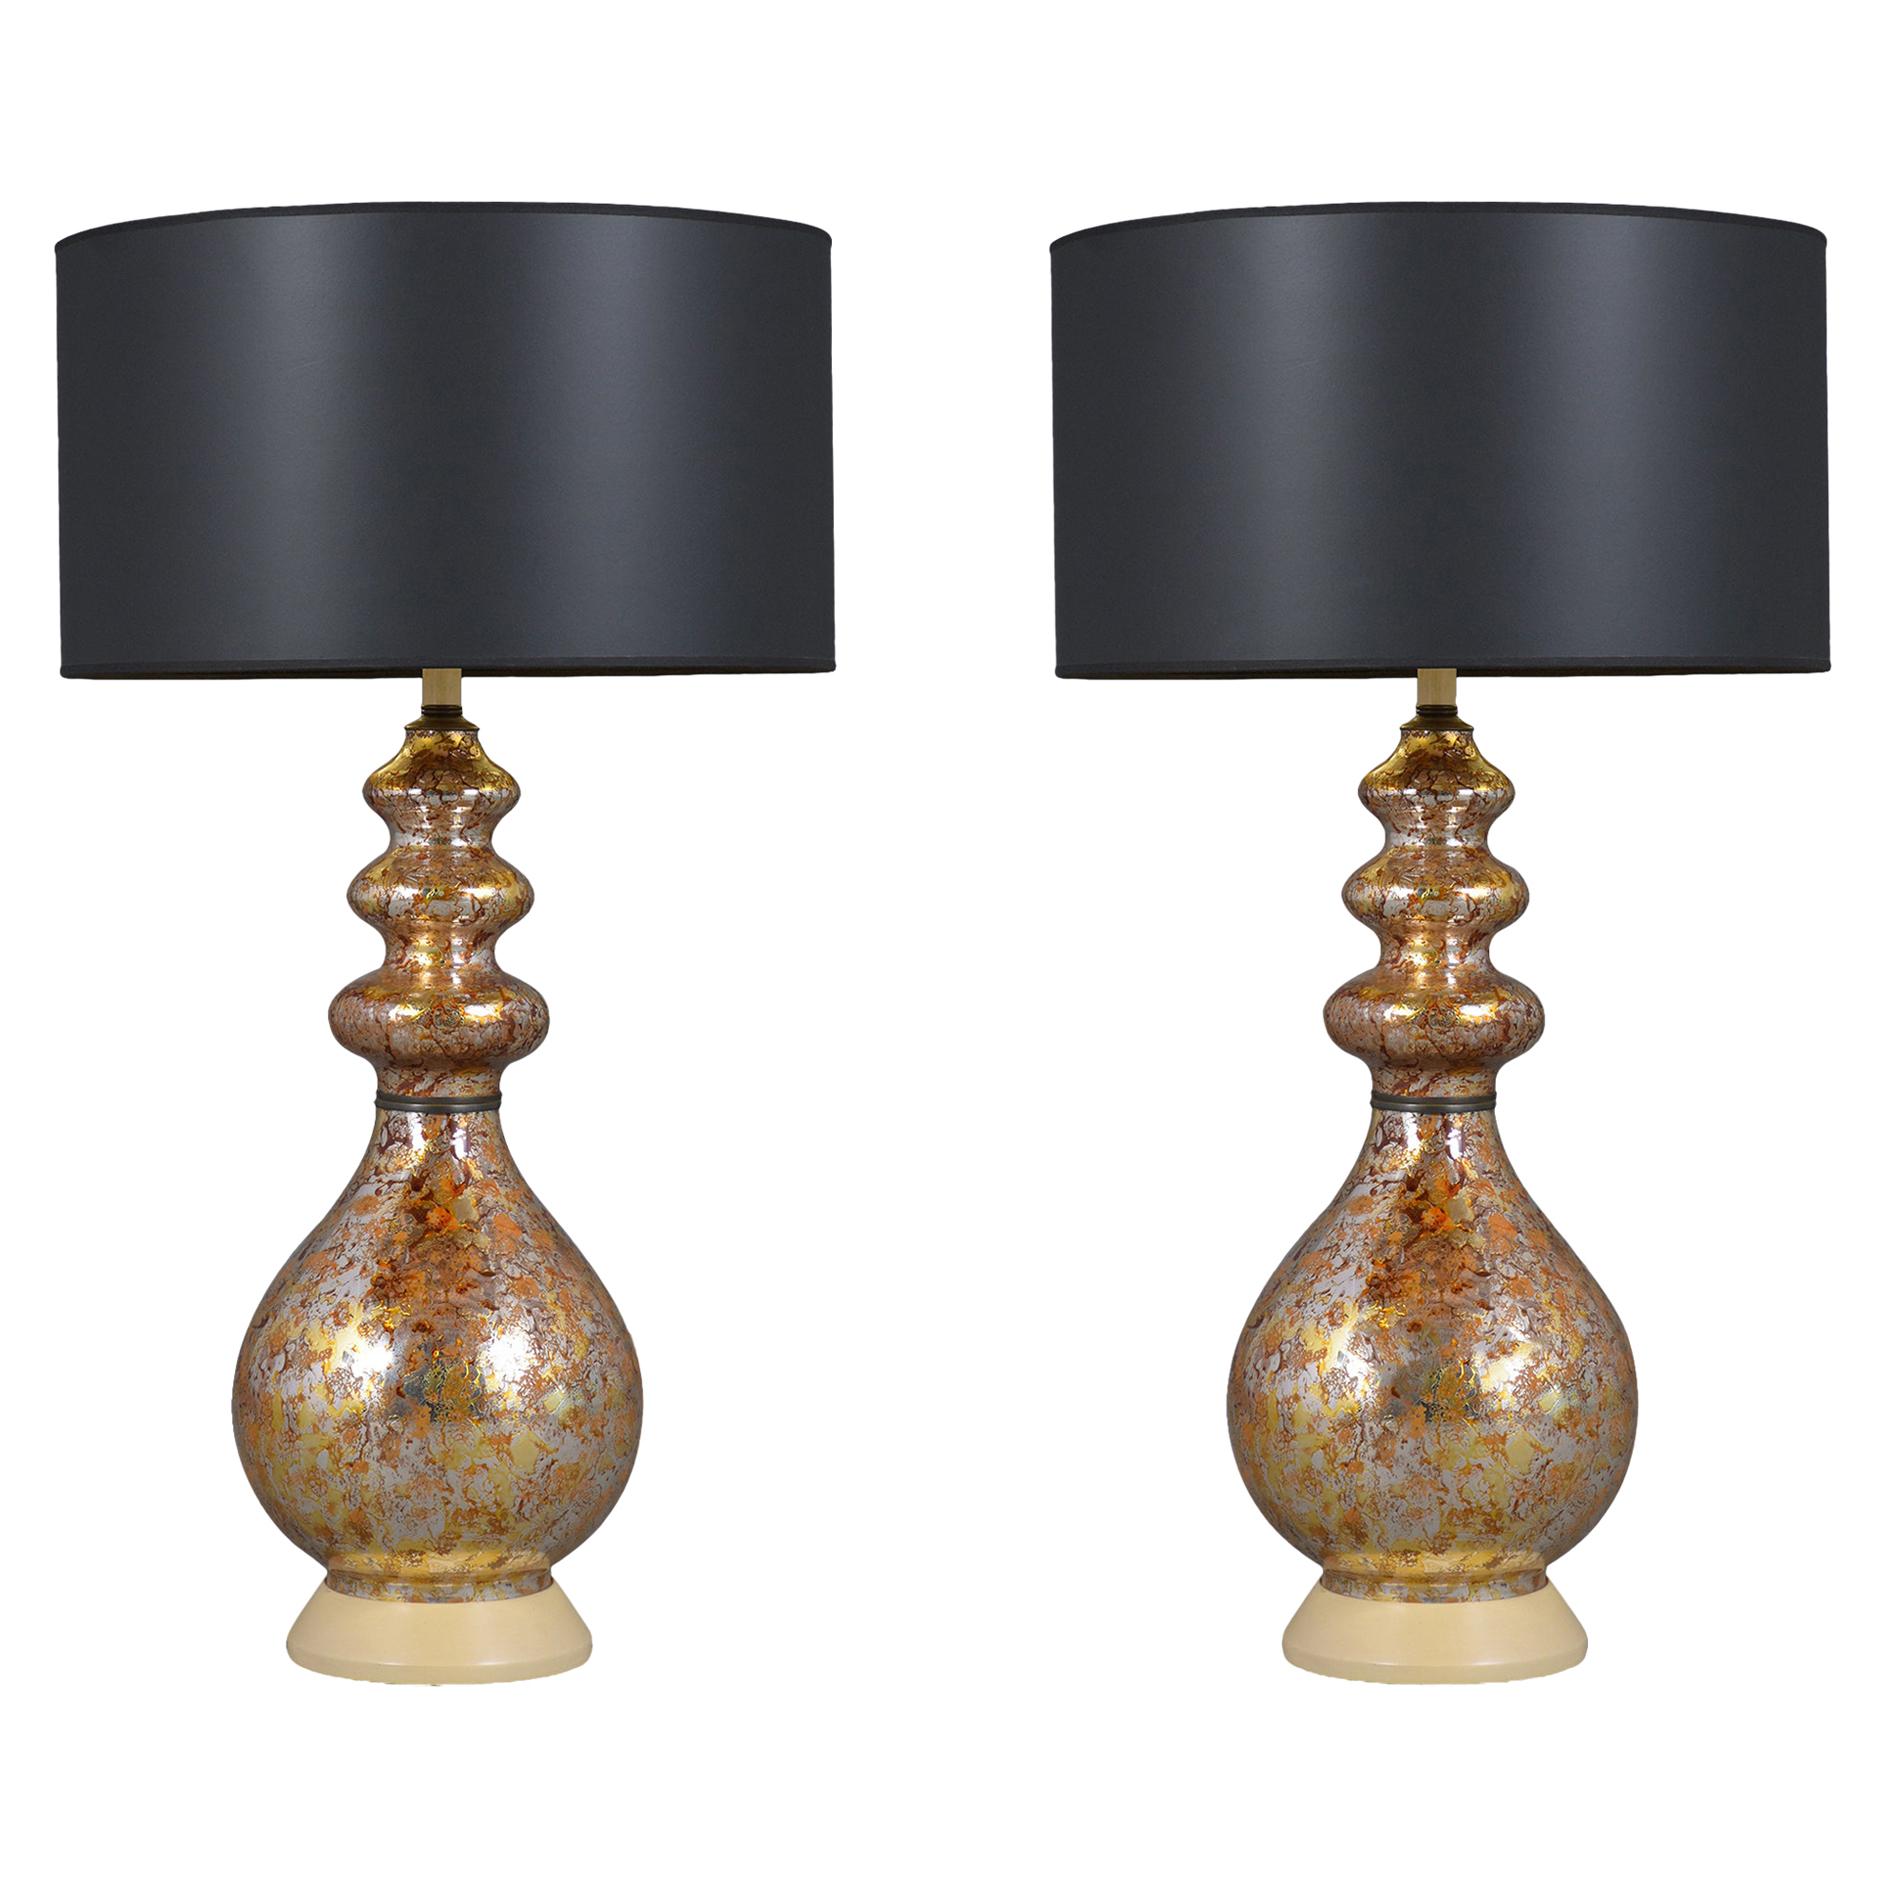 Paire de lampes de table Modernity en verre avec abat-jour noir et doré - Elegance Vintage